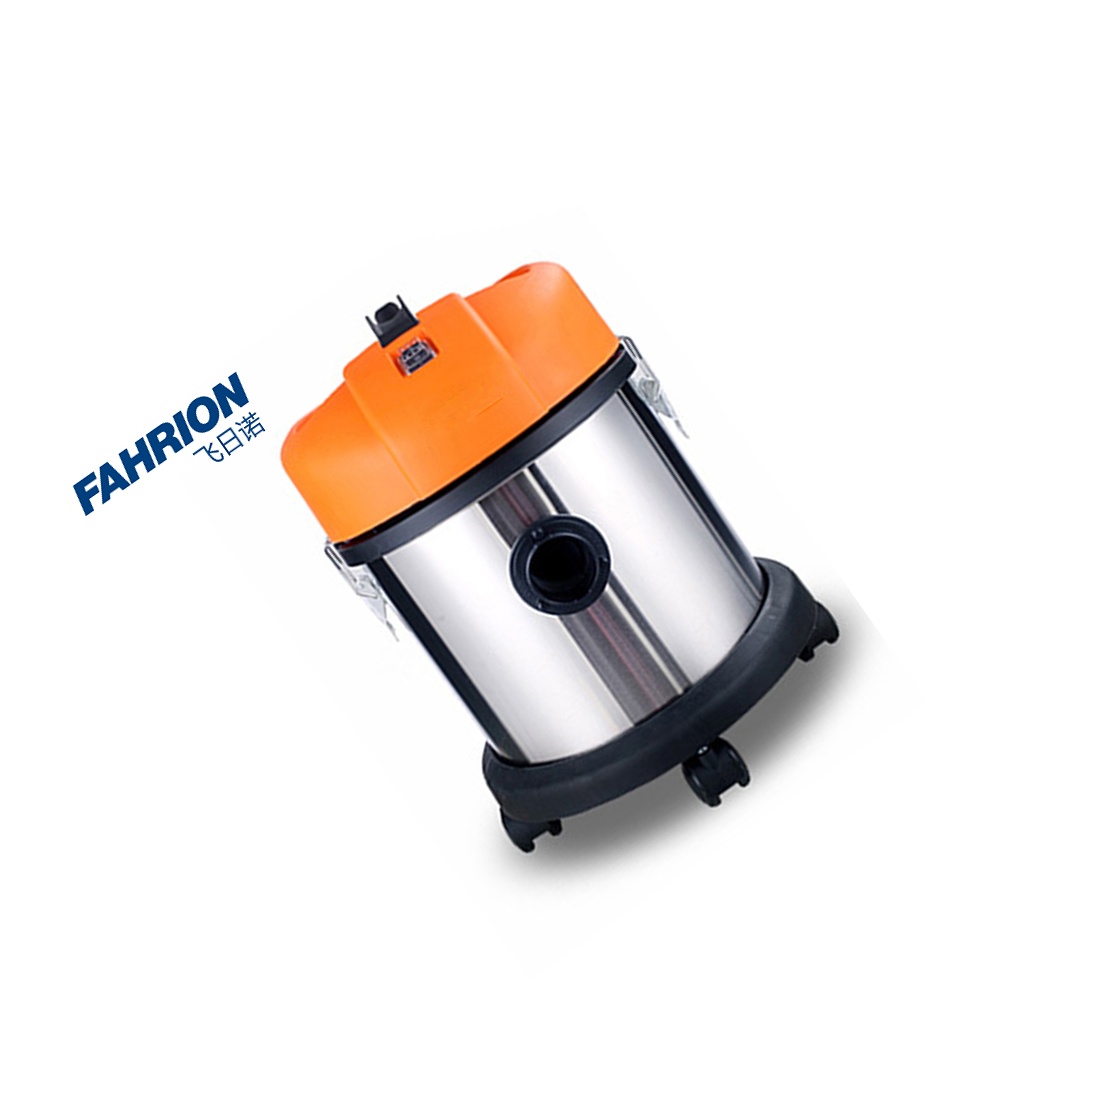 FAHRION 商用吸尘器，干湿两用吸尘器 GD99-900-2770